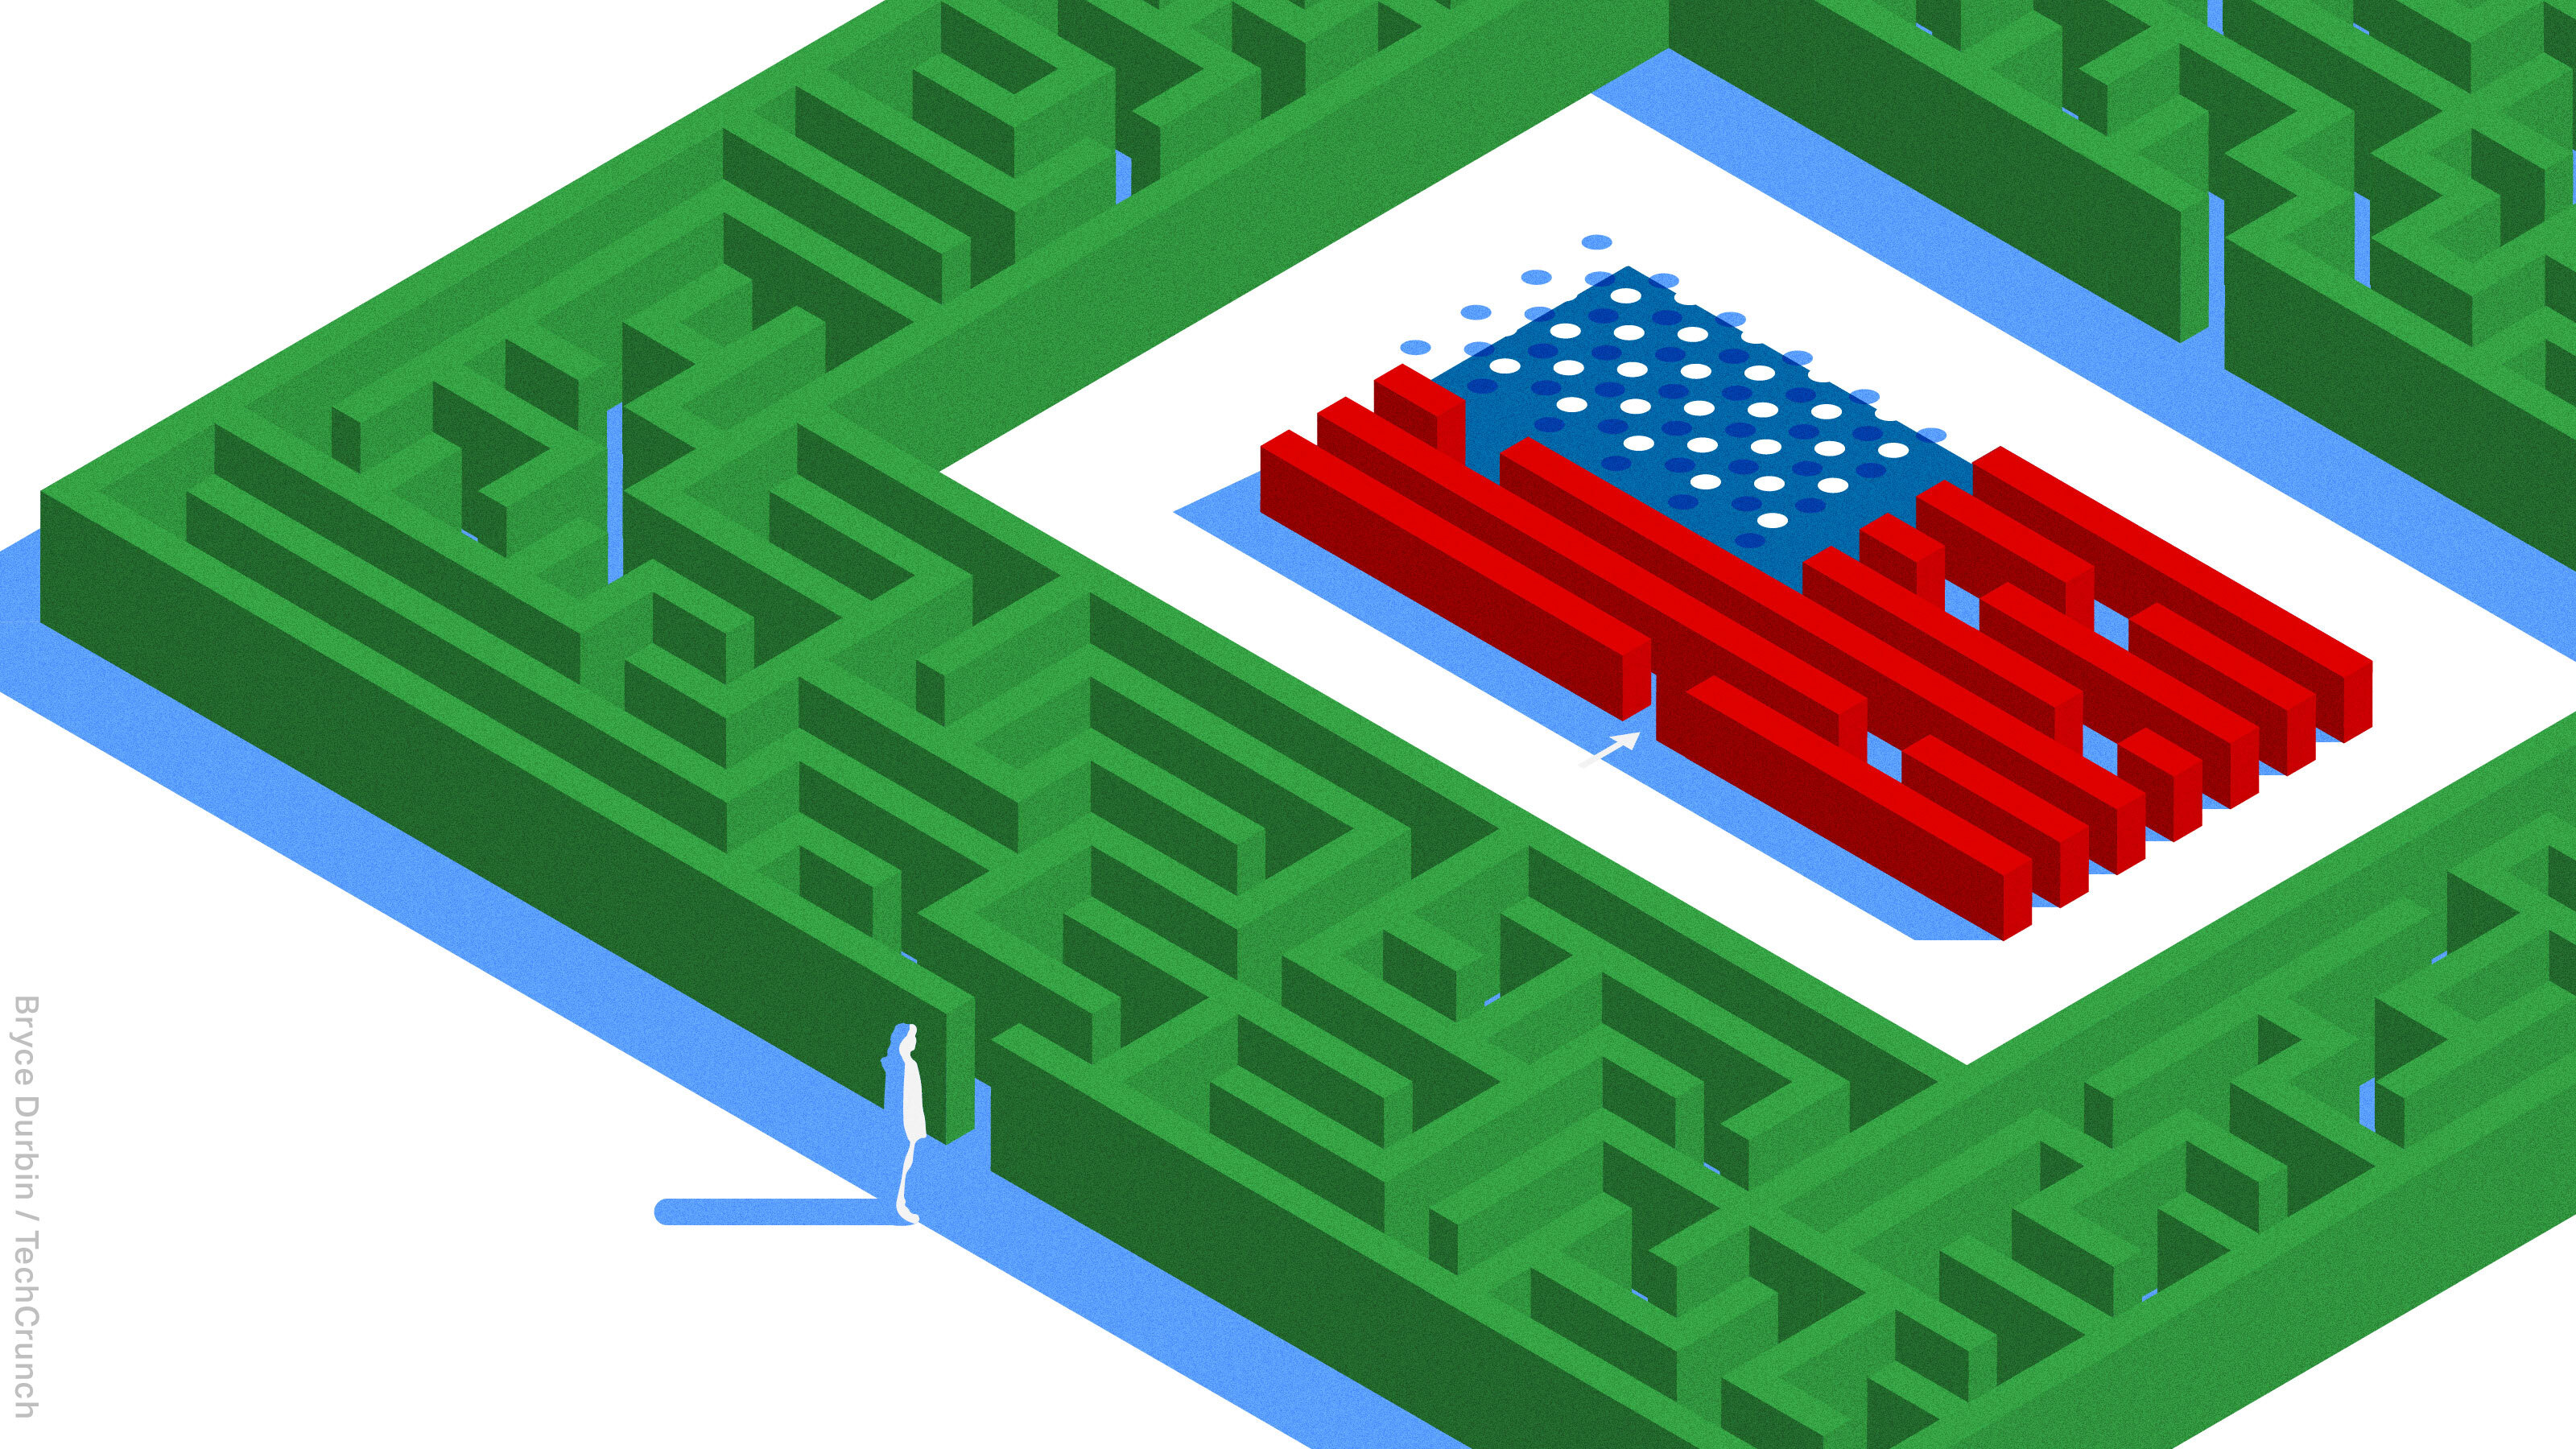 einsame Figur am Eingang zum Labyrinth Hecke, die eine amerikanische Flagge in der Mitte hat